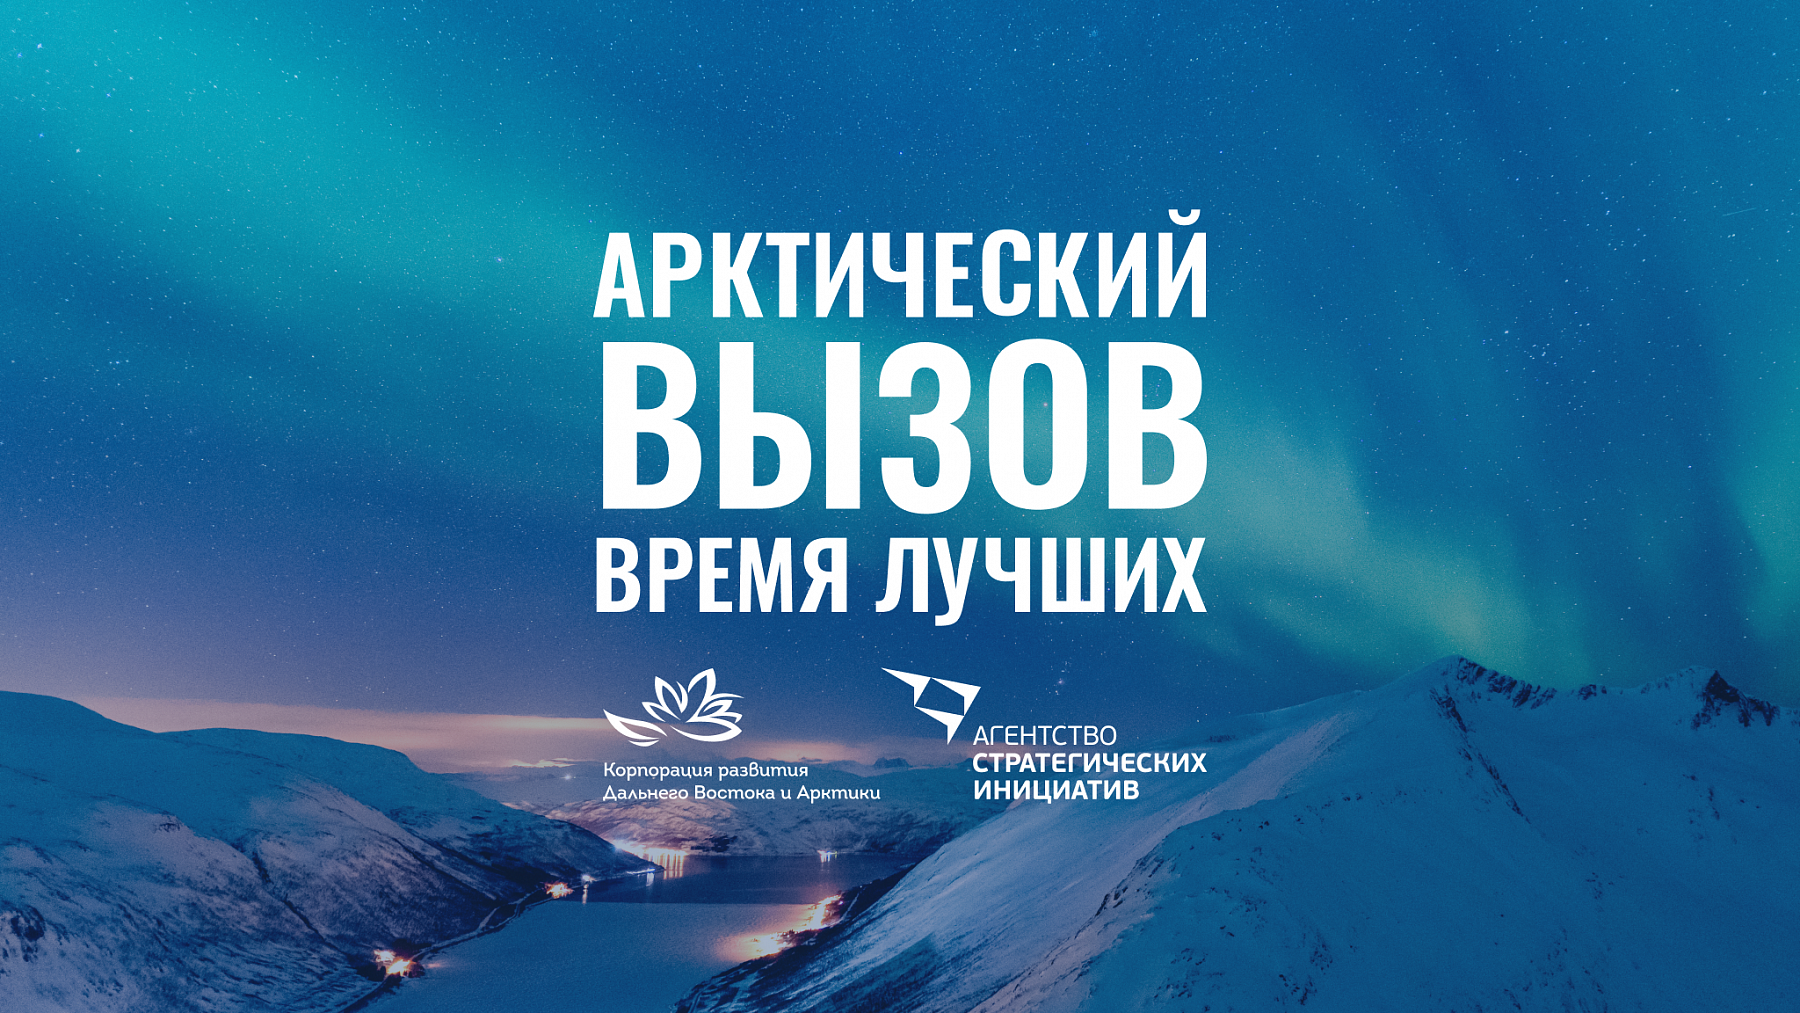 Начался приём заявок на участие в масштабной федеральной программе по привлечению высококвалифицированных кадров в арктическую зону «Арктический вызов»